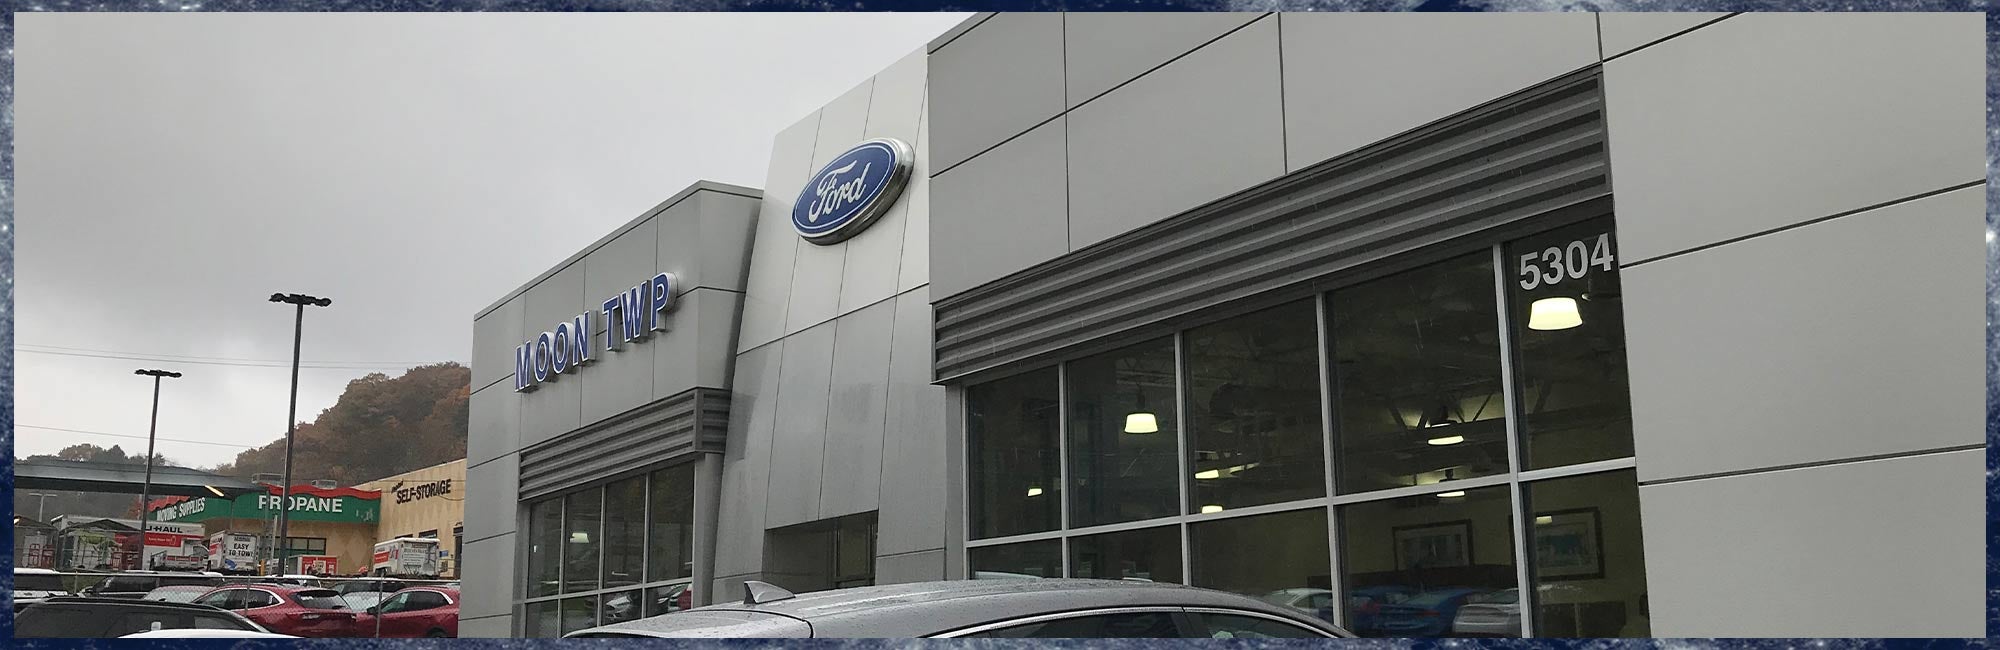 Ford Dealer Serving Zelienople, PA New & Used Car Dealership